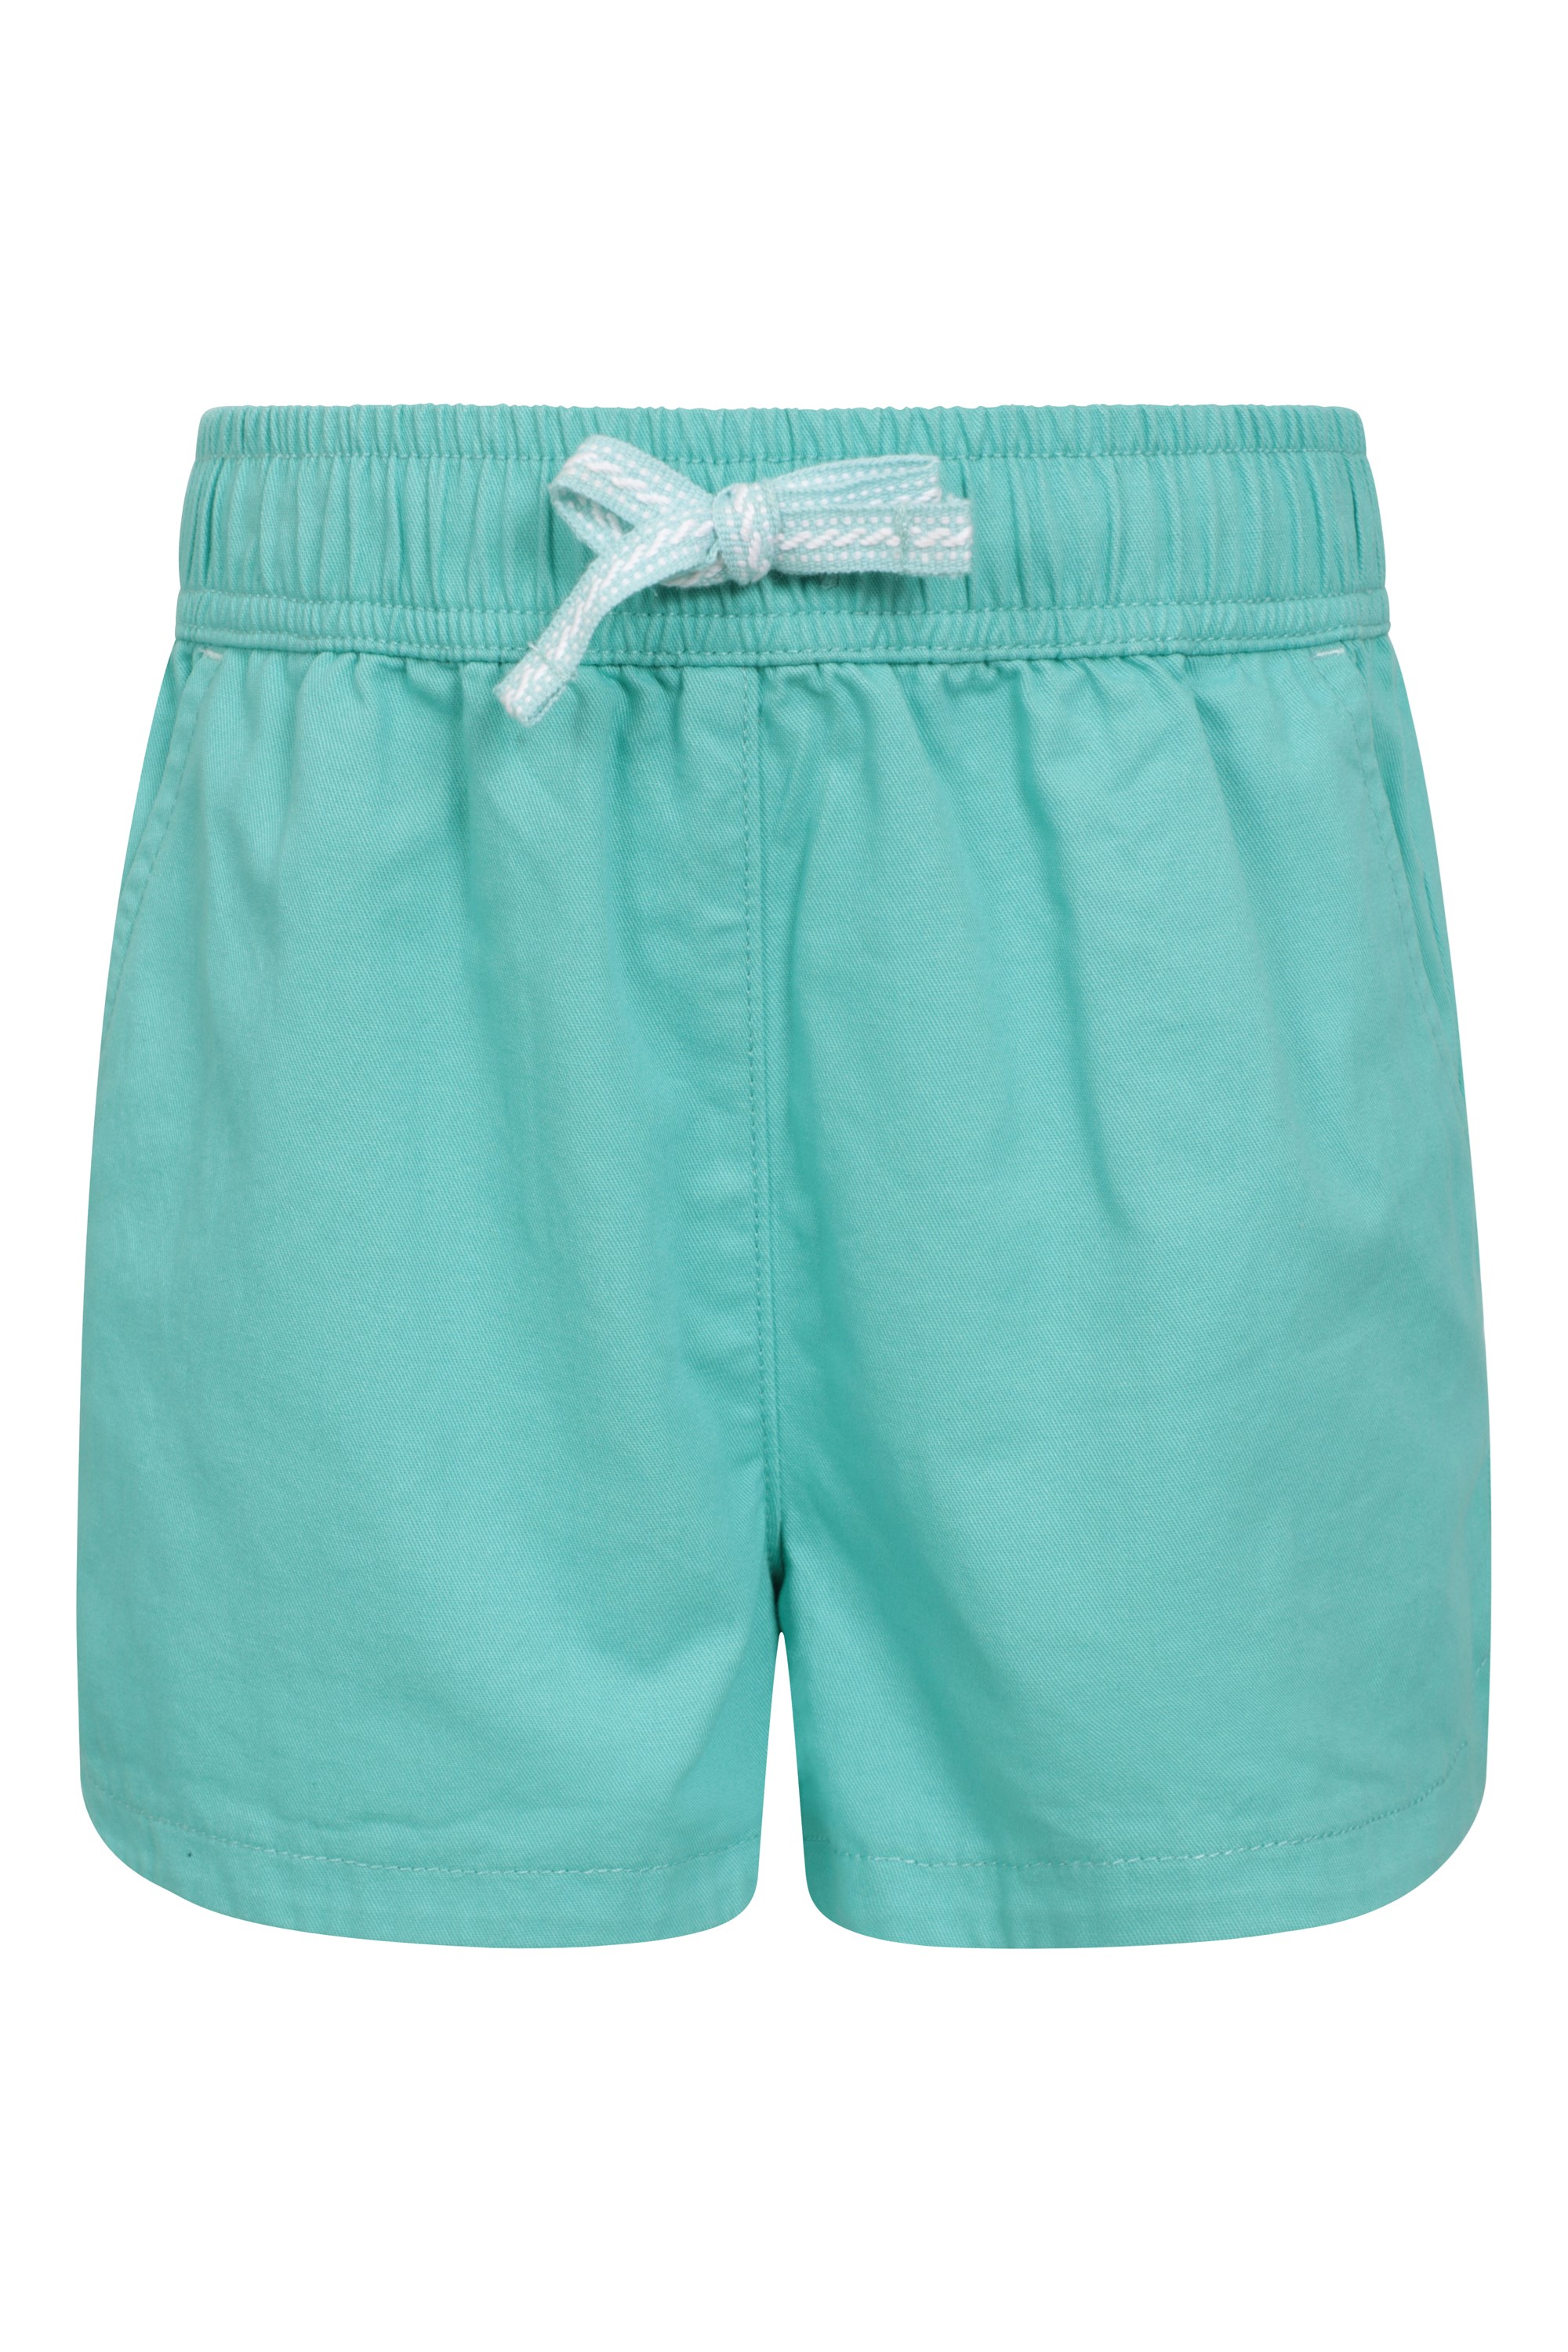 Mountain Warehouse Panama Mädchen-Schwimm-Shorts für die Ferien Kinder-Sommershorts mit elastischer Taille leichte Strandshorts mit Kordelzug verstellbare Kurze Hose 